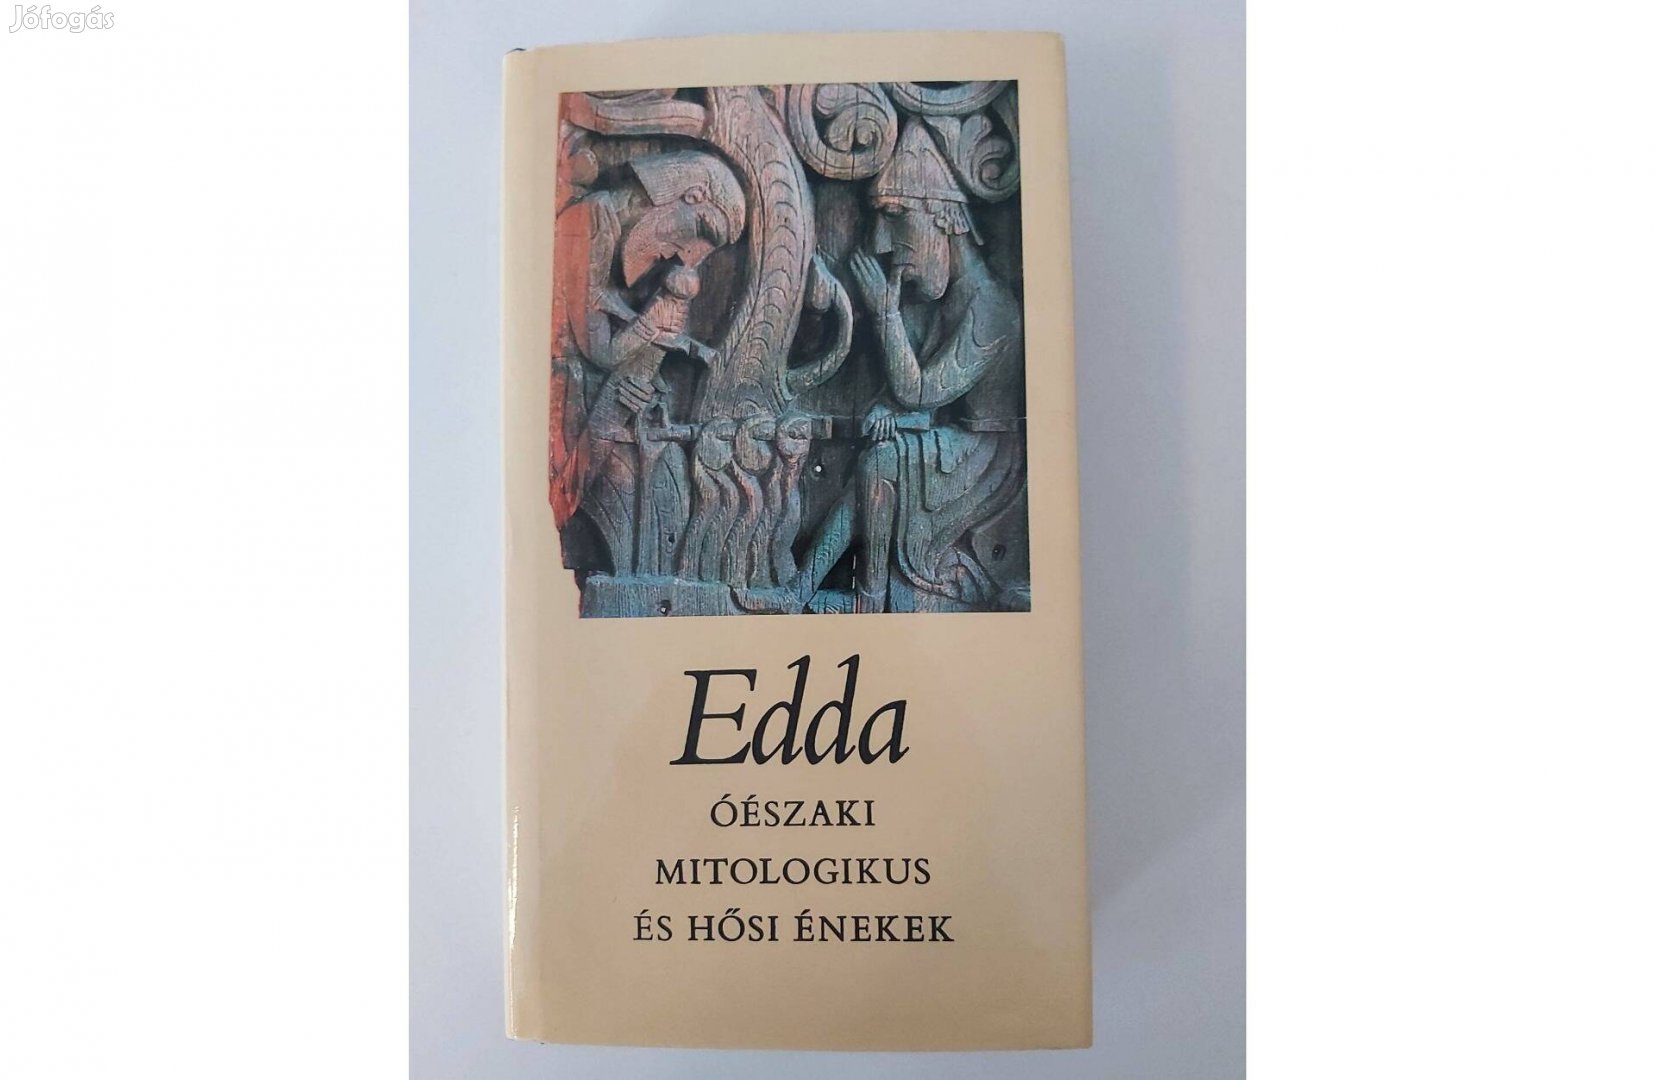 Edda - Óészaki mitologikus és hősi énekek